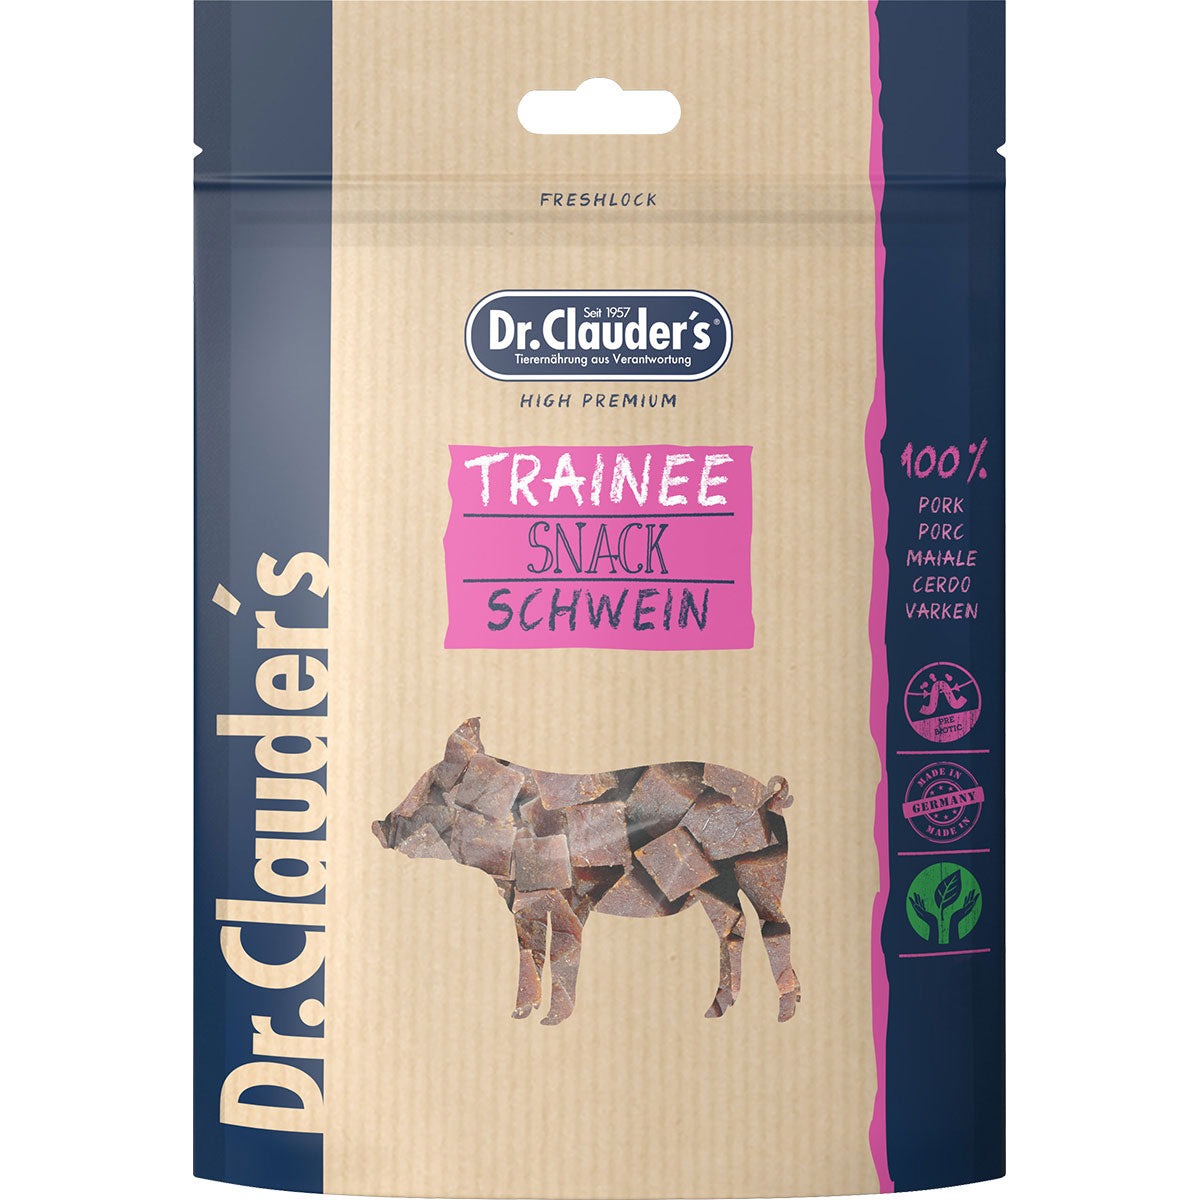 Dr. Clauders Trainee Snack Schwein, 80g